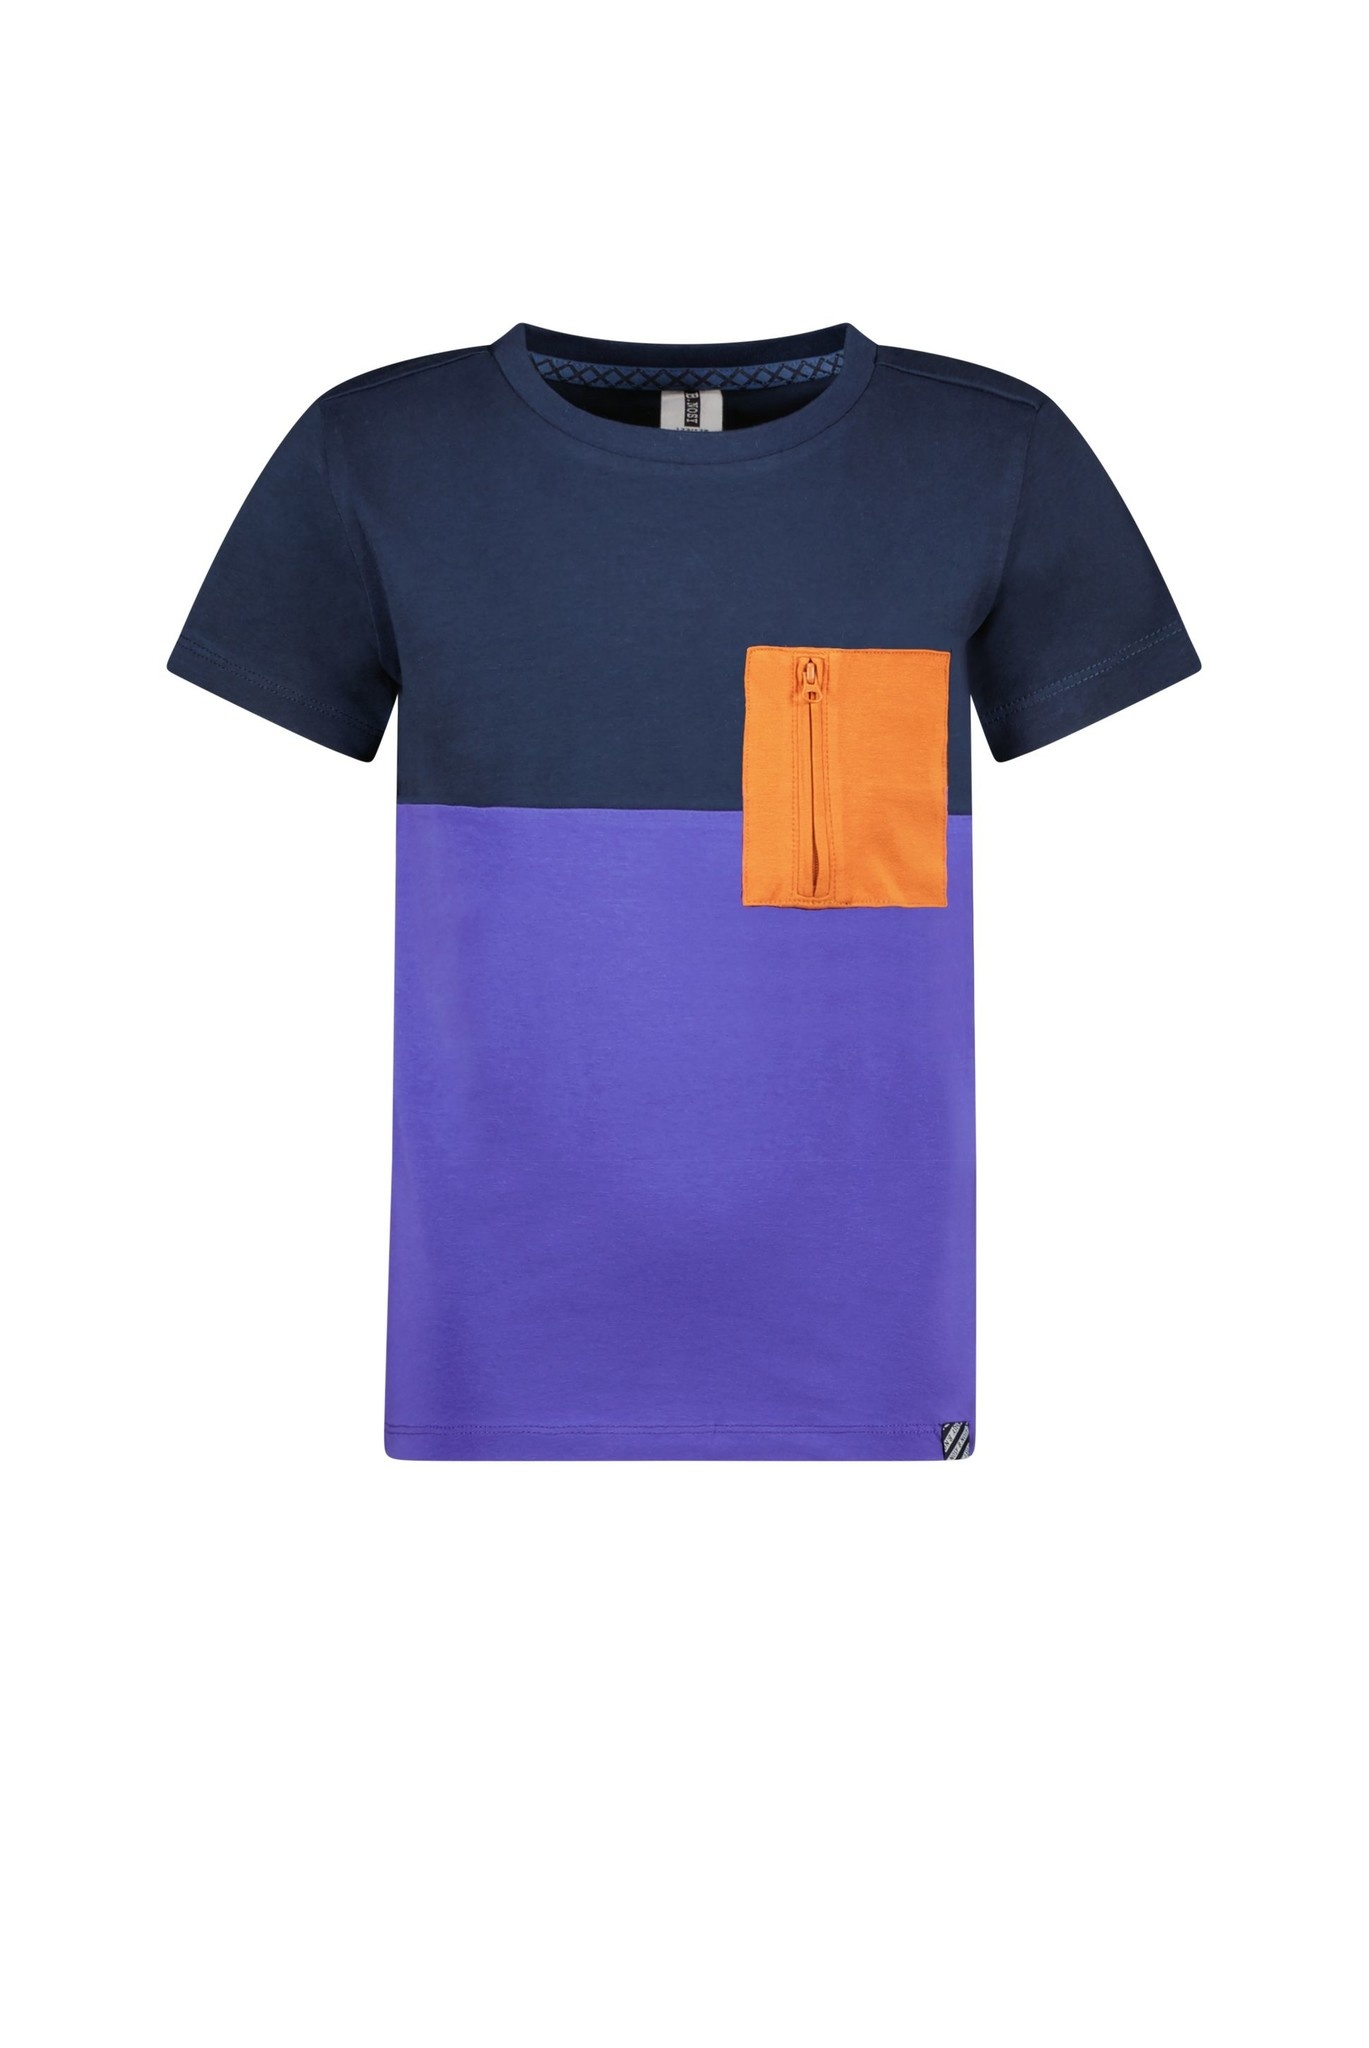 B.Nosy Jongens t-shirt colorblock - Navy blauw